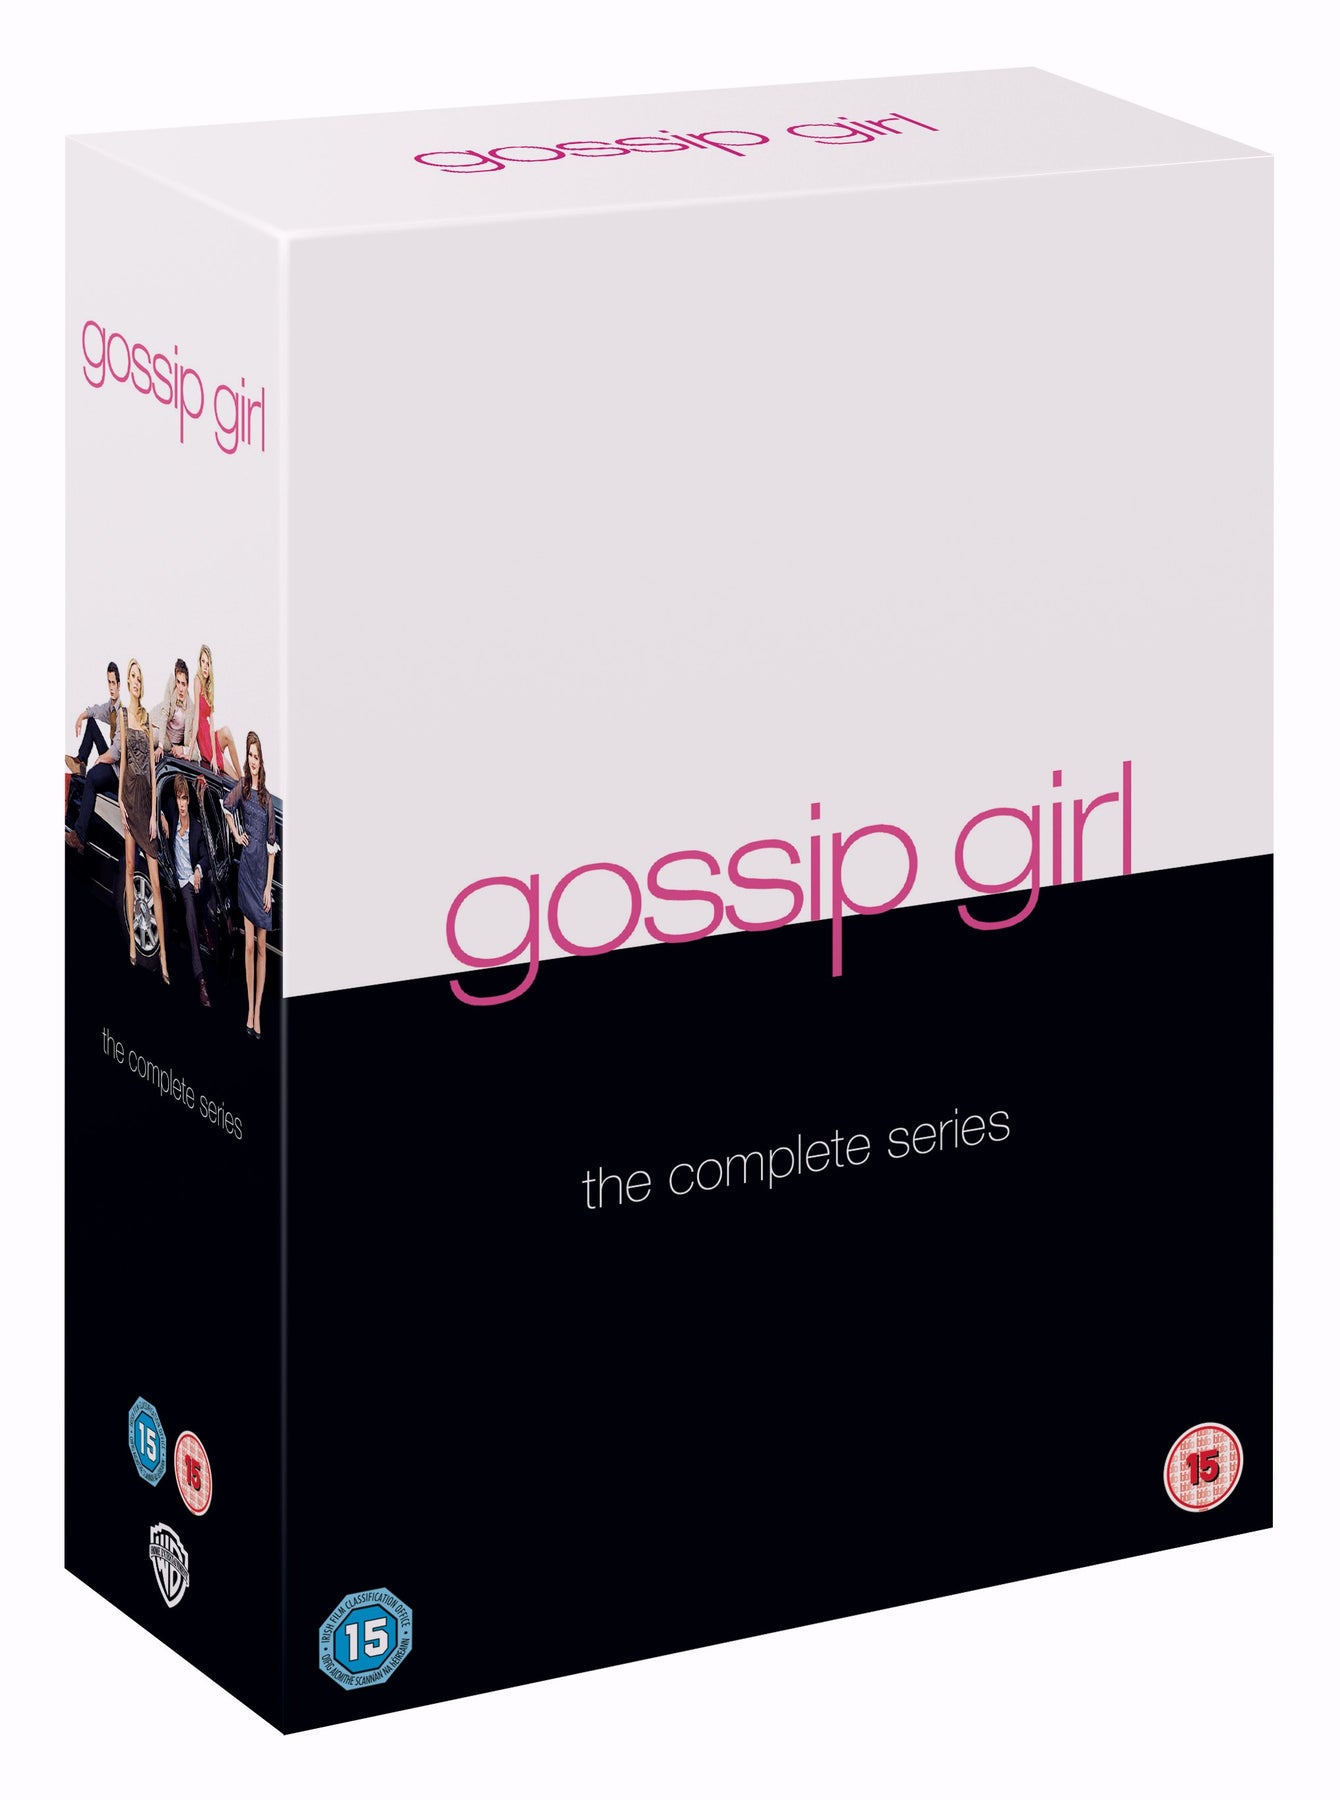 Gossip Girl The Complete Series 1 6 Dvd Warner Bros Shop Uk